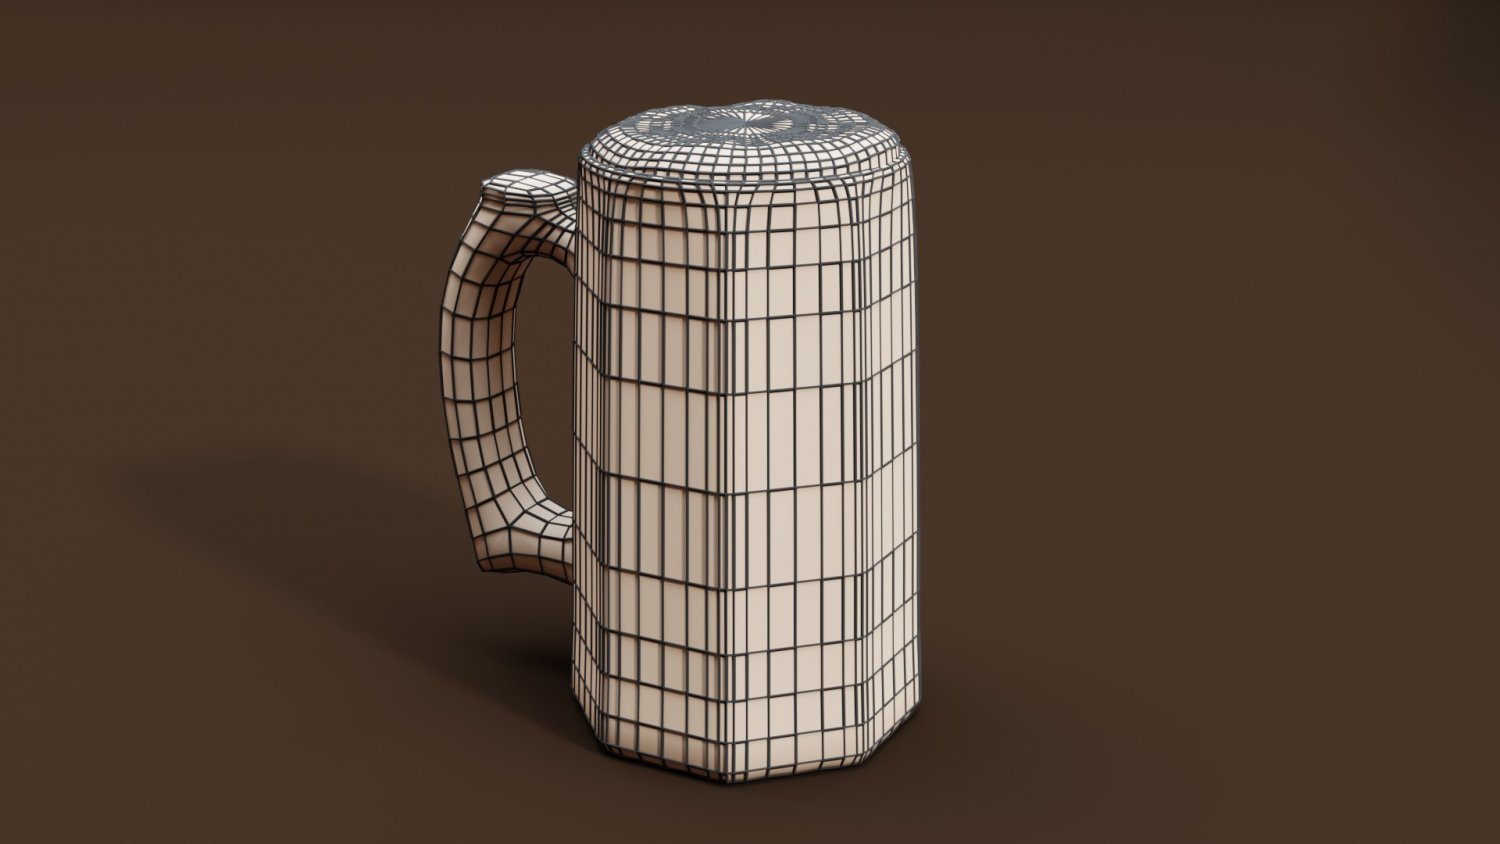 Blender Mug, FREE 3D Beverage models